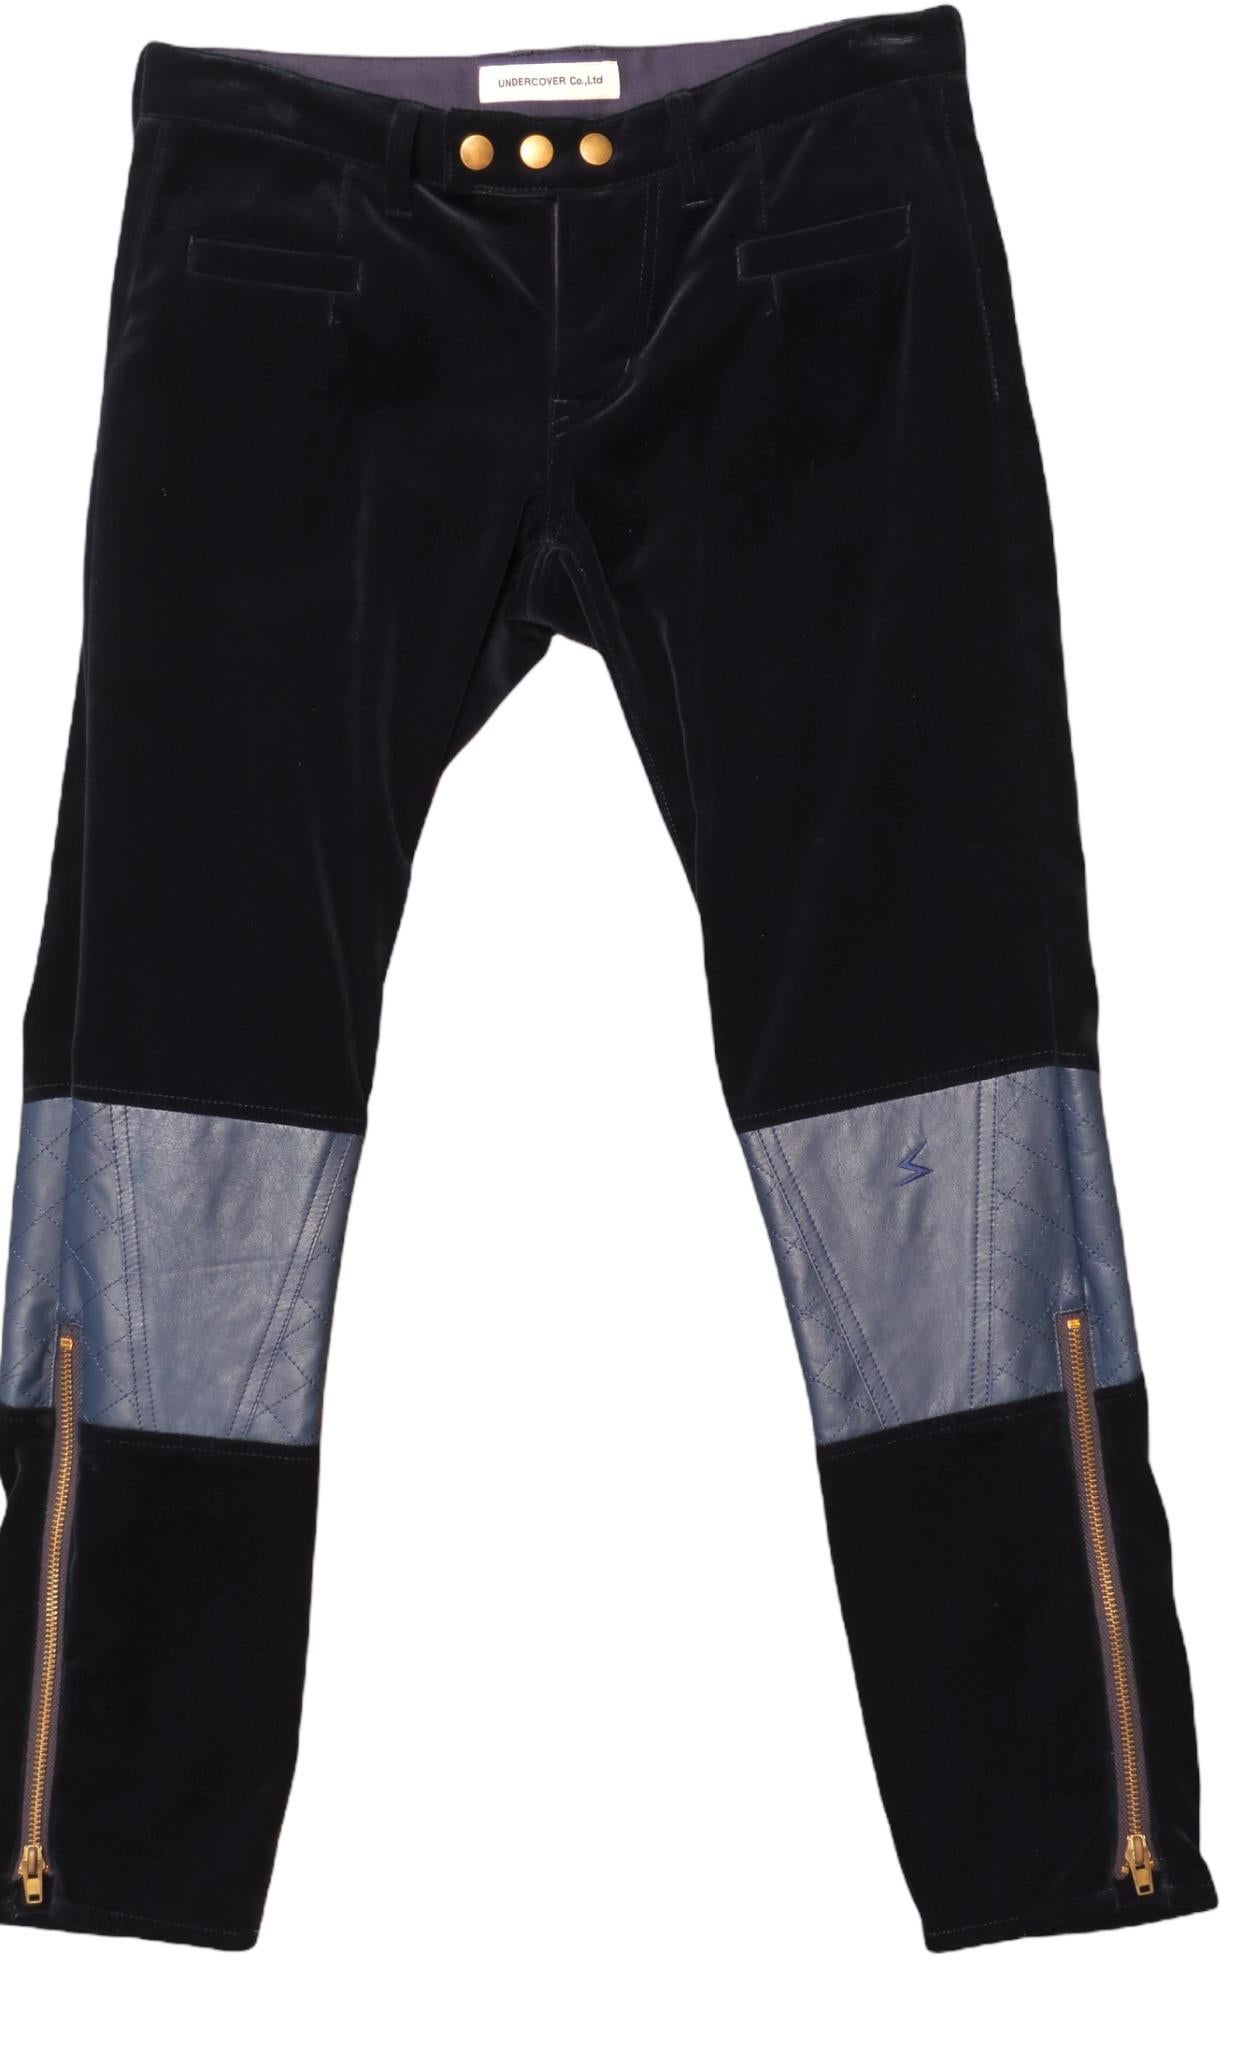 Pantalon droit vintage Undercover de couleur marine, velouté et doux, avec empiècements en cuir aux genoux et jambes zippées. Fermeture à glissière et boutons-pression sur le devant, avec poches avant et arrière.